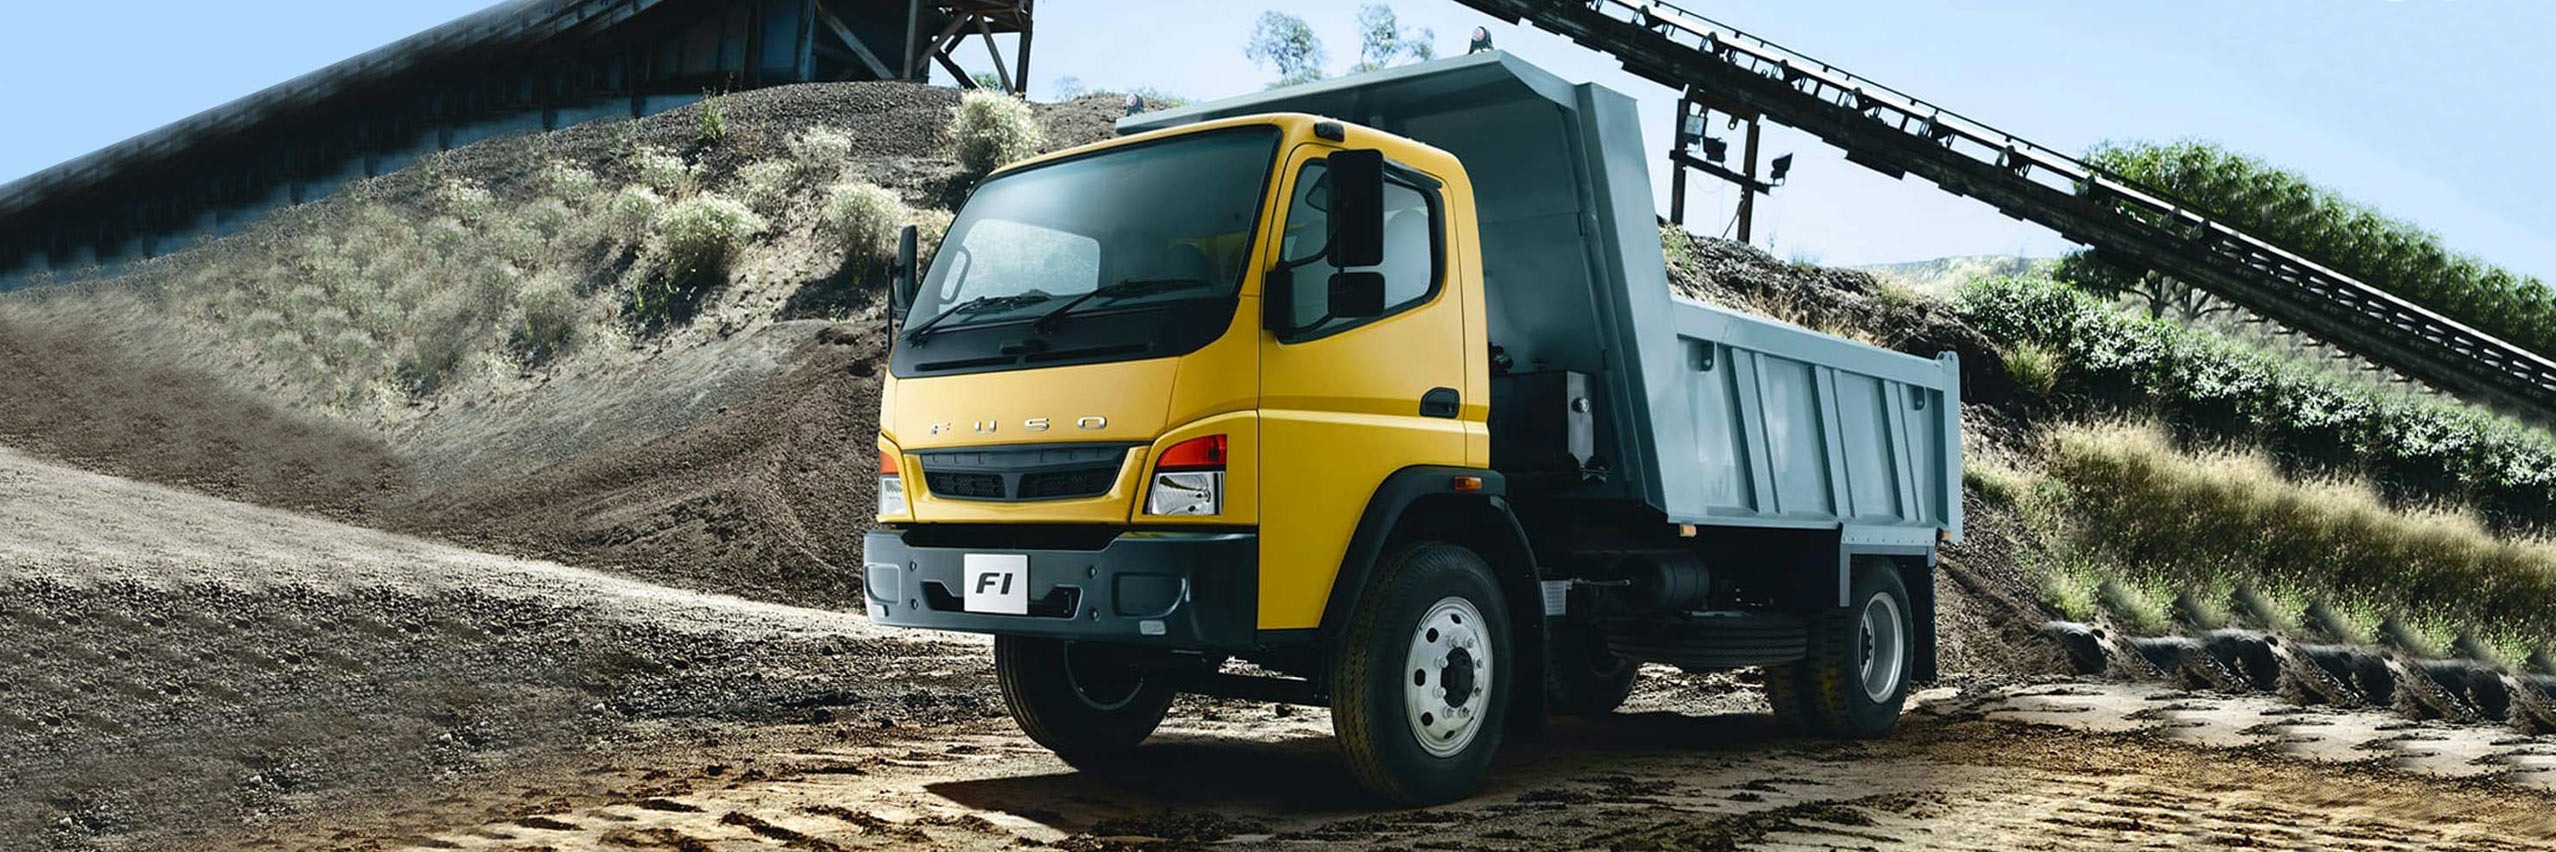 Los camiones de carga media FI de FUSO ofrecen soluciones para empresas de construccion